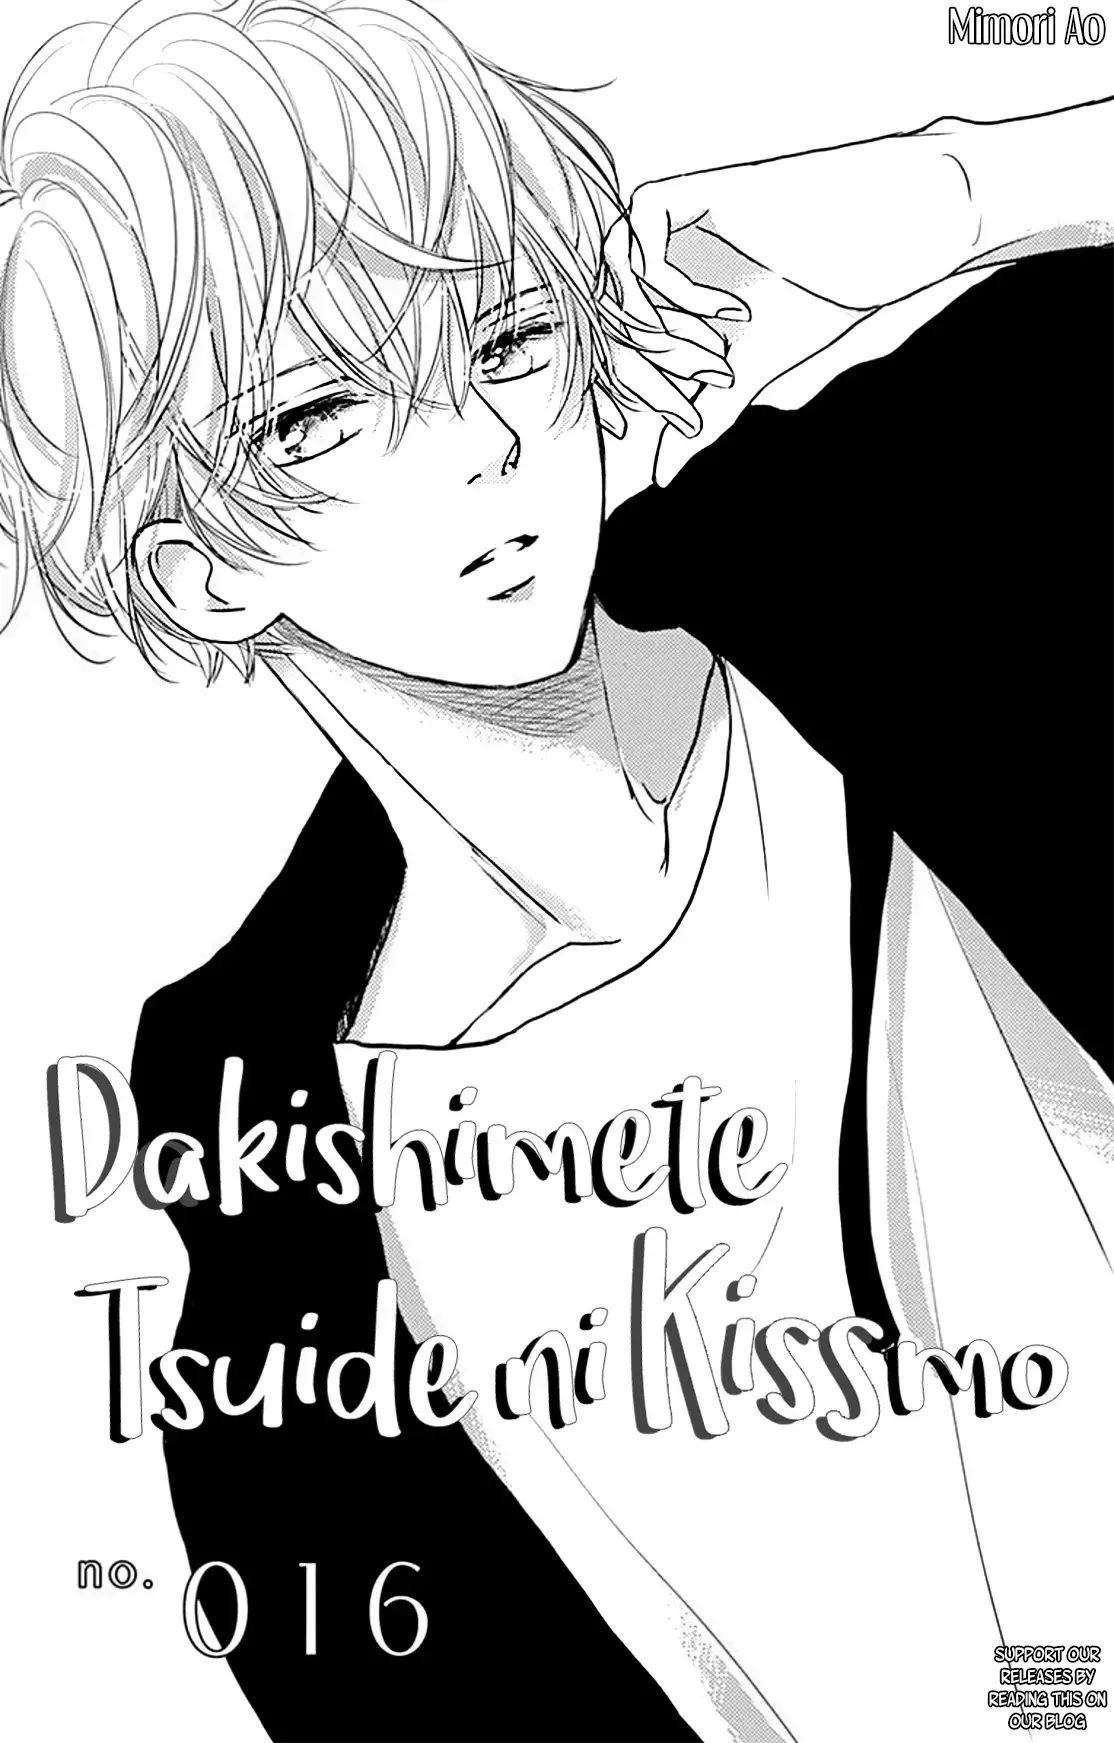 Dakishimete, Tsuideni Kiss Mo - 16 page 3-270449ea